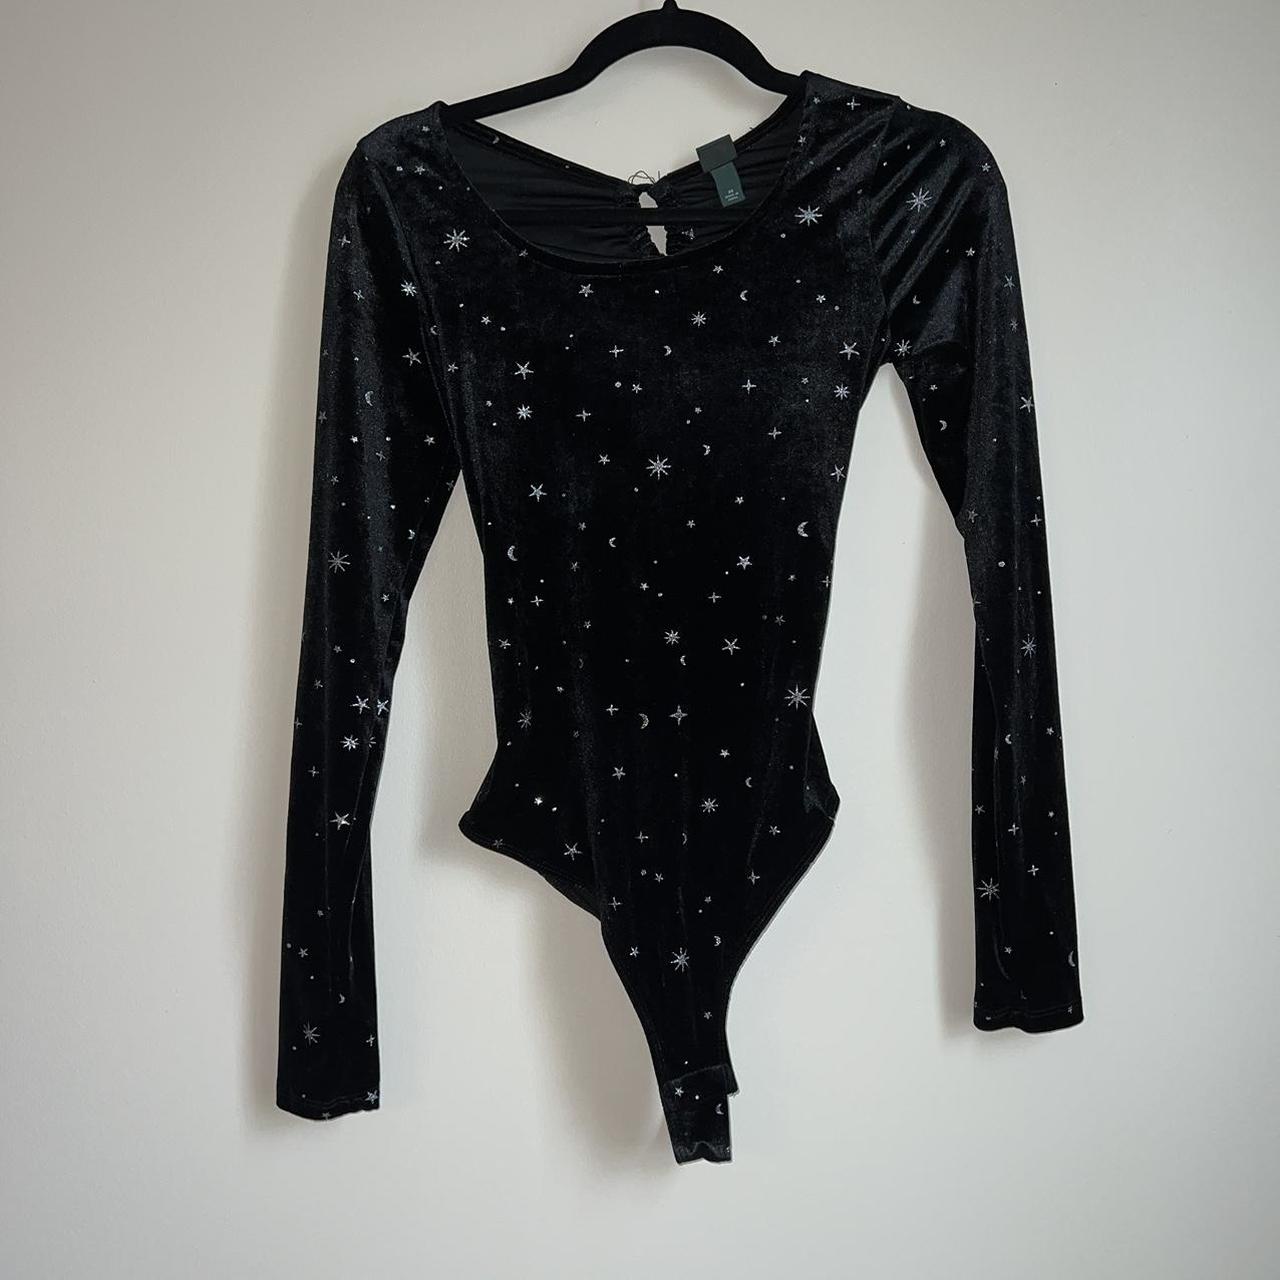 Wild Fable open back velvet star black bodysuit size... - Depop